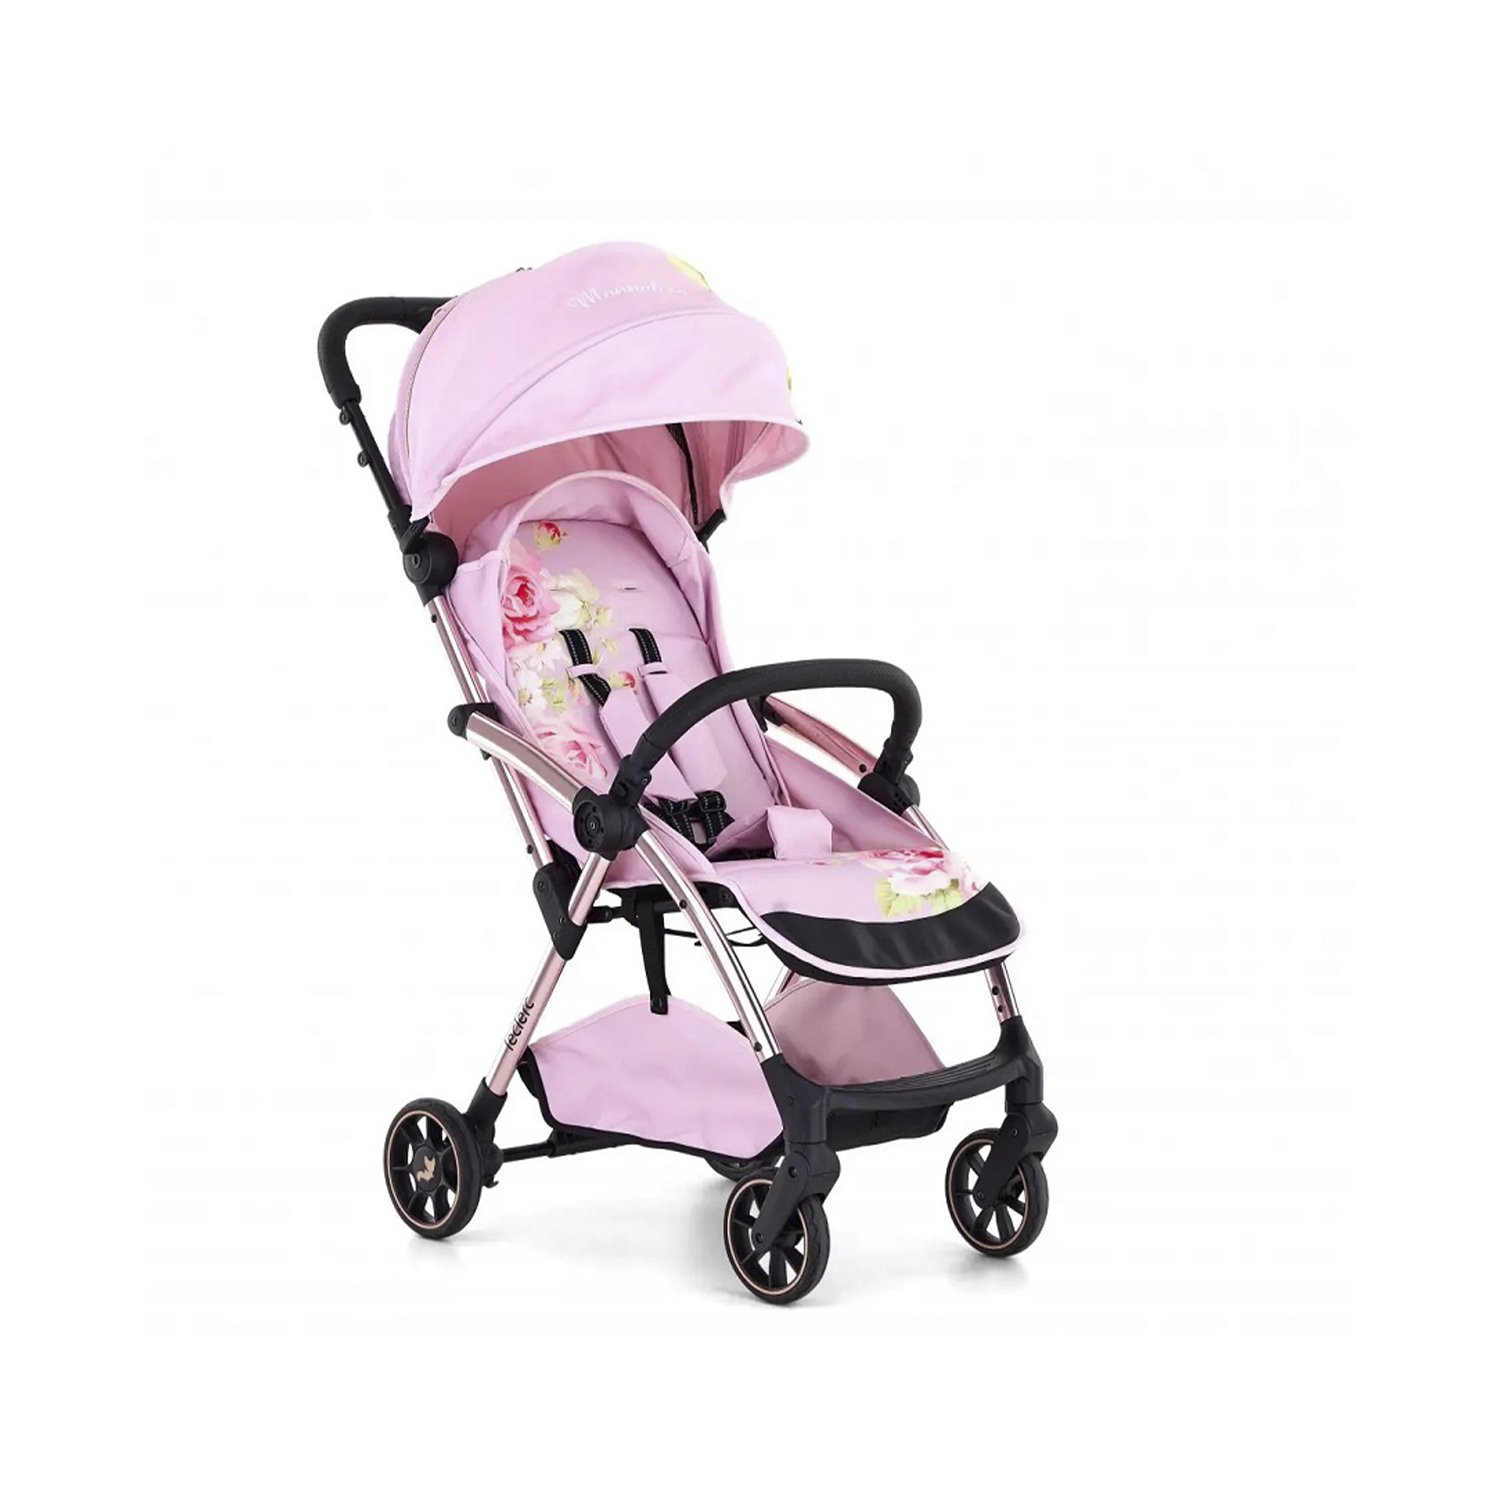 Прогулочная коляска Leclerc Baby + конверт аксессуар для коляски leclerc baby